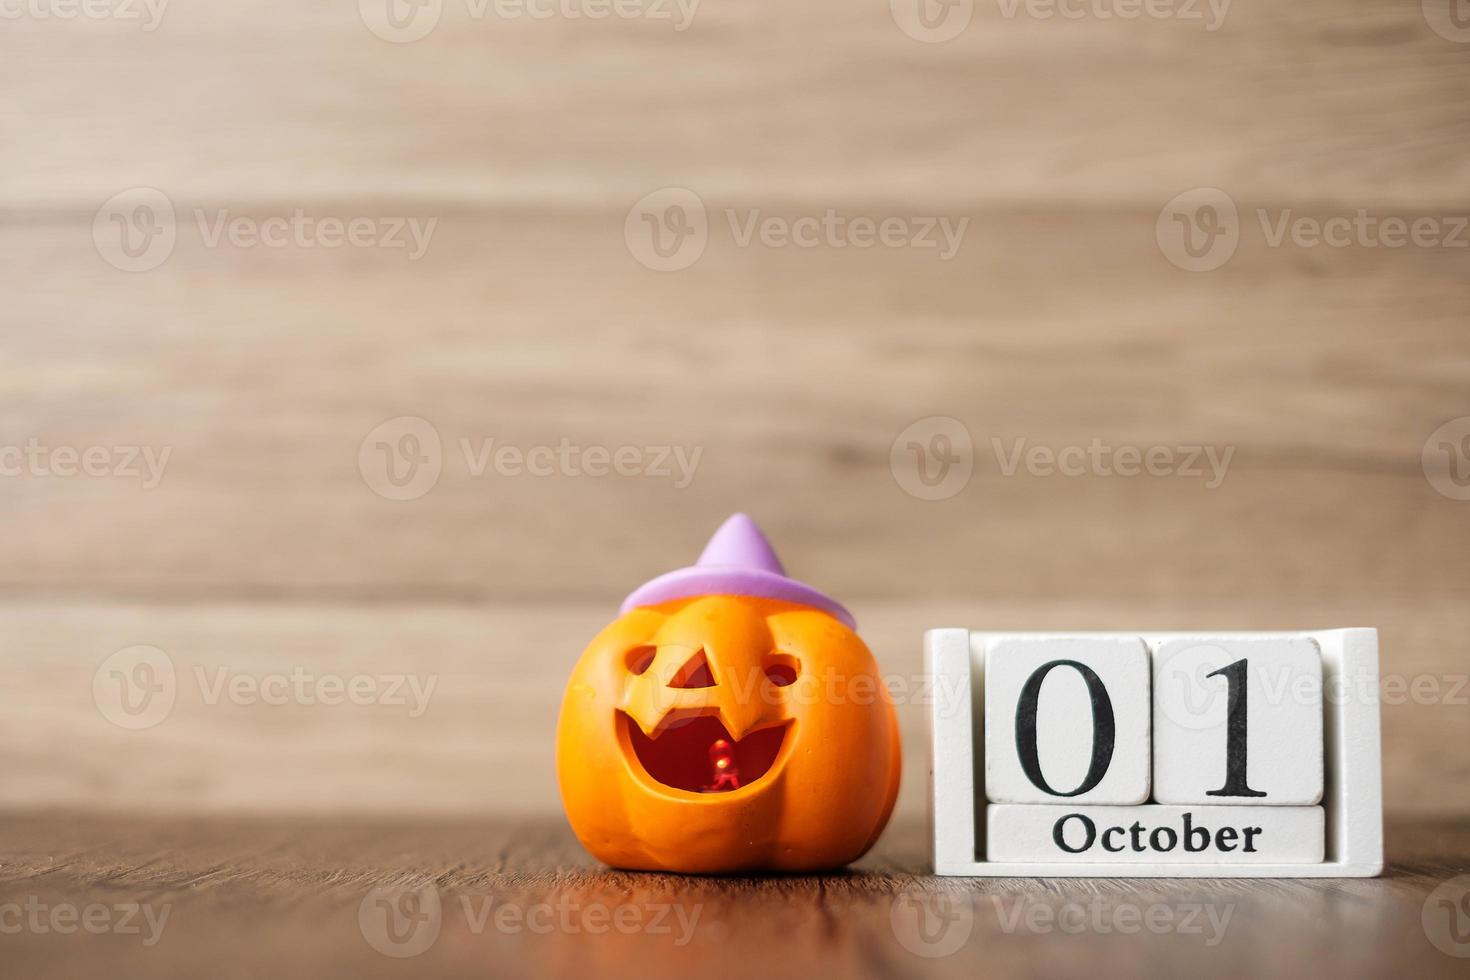 feliz día de halloween con calabaza jack o linterna y calendario del 1 de octubre. truco o amenaza, hola octubre, otoño otoño, festivo, fiesta y concepto de vacaciones foto